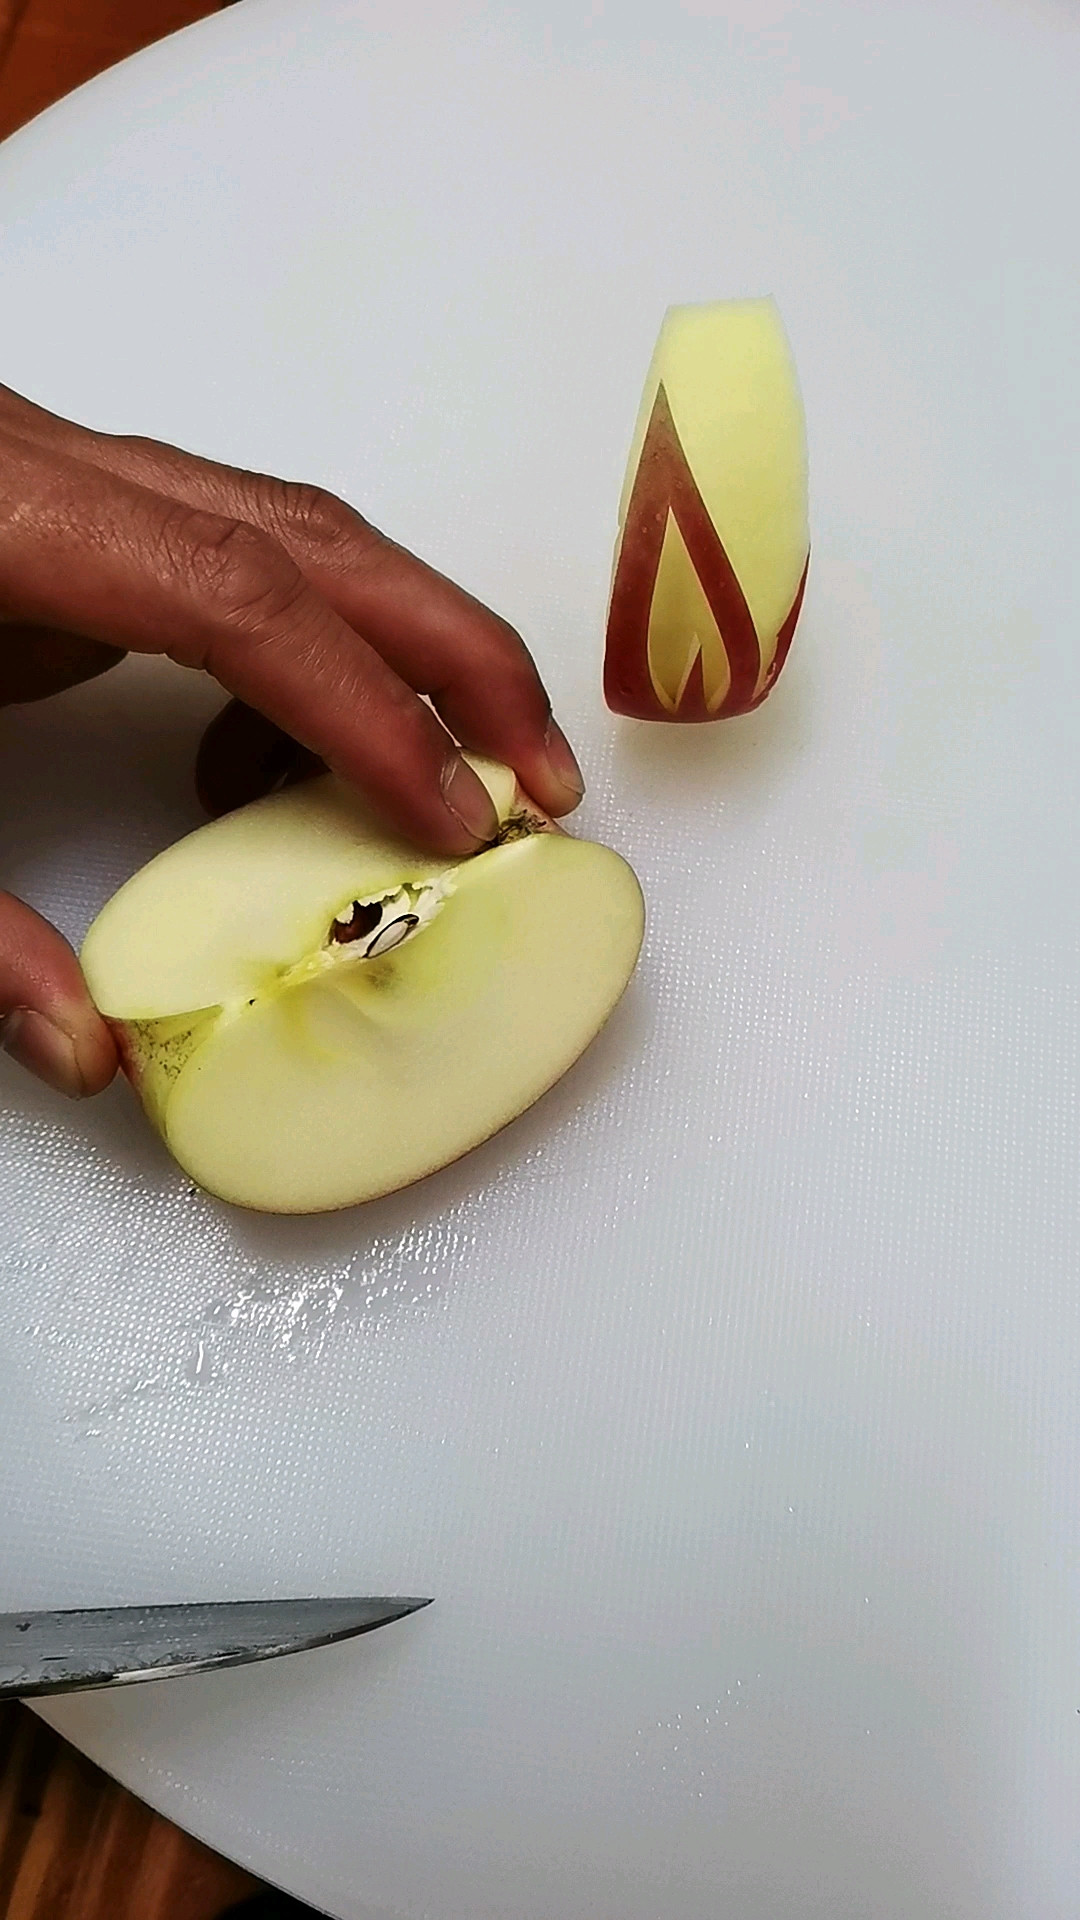 水果拼盘切法苹果图片